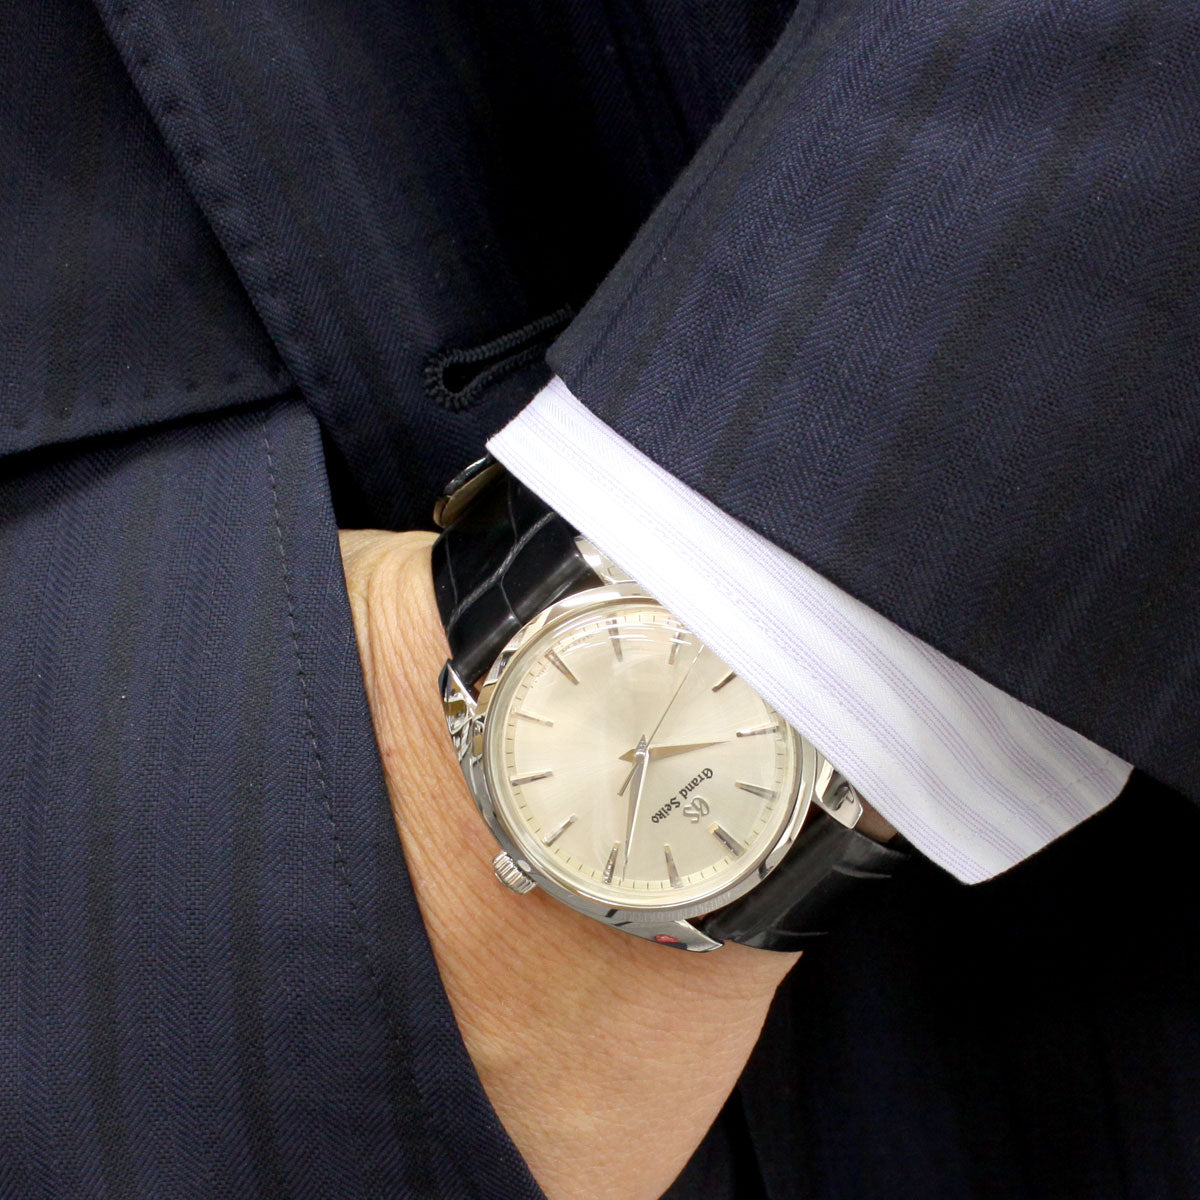 グランドセイコー GRAND SEIKO 腕時計 ペアモデル メンズ SBGX331 エレガンス Elegance Collection SBGX331【正規品】【36回無金利ローン】